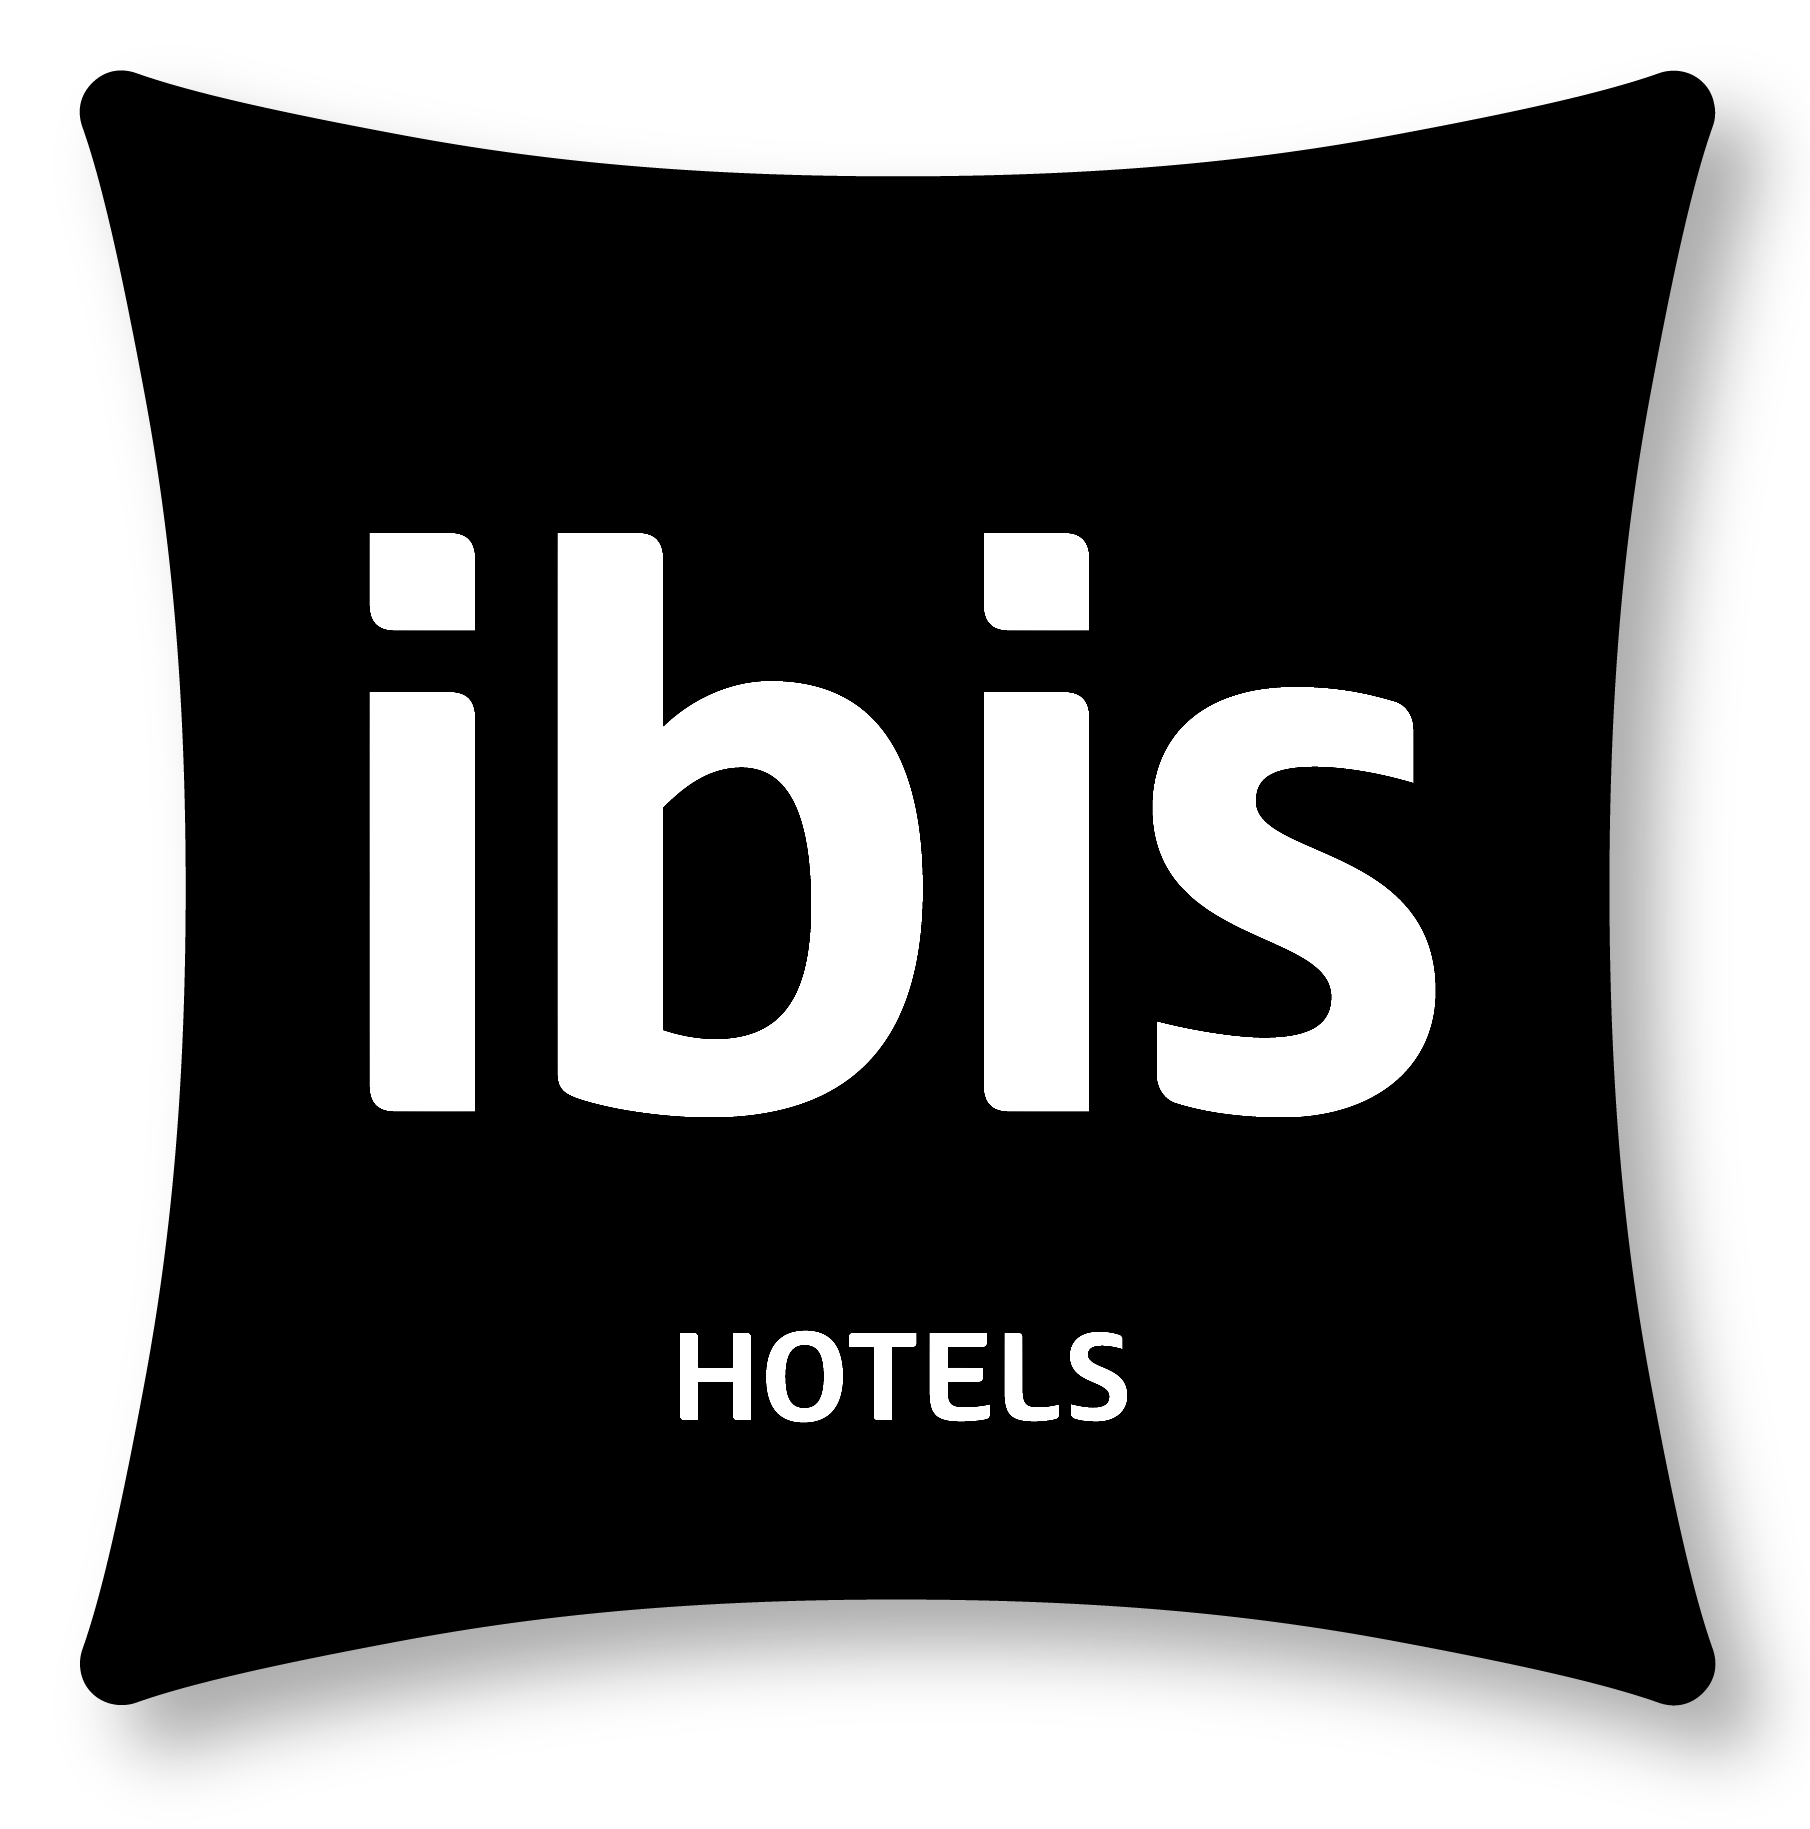 Отель_Ибис_лого